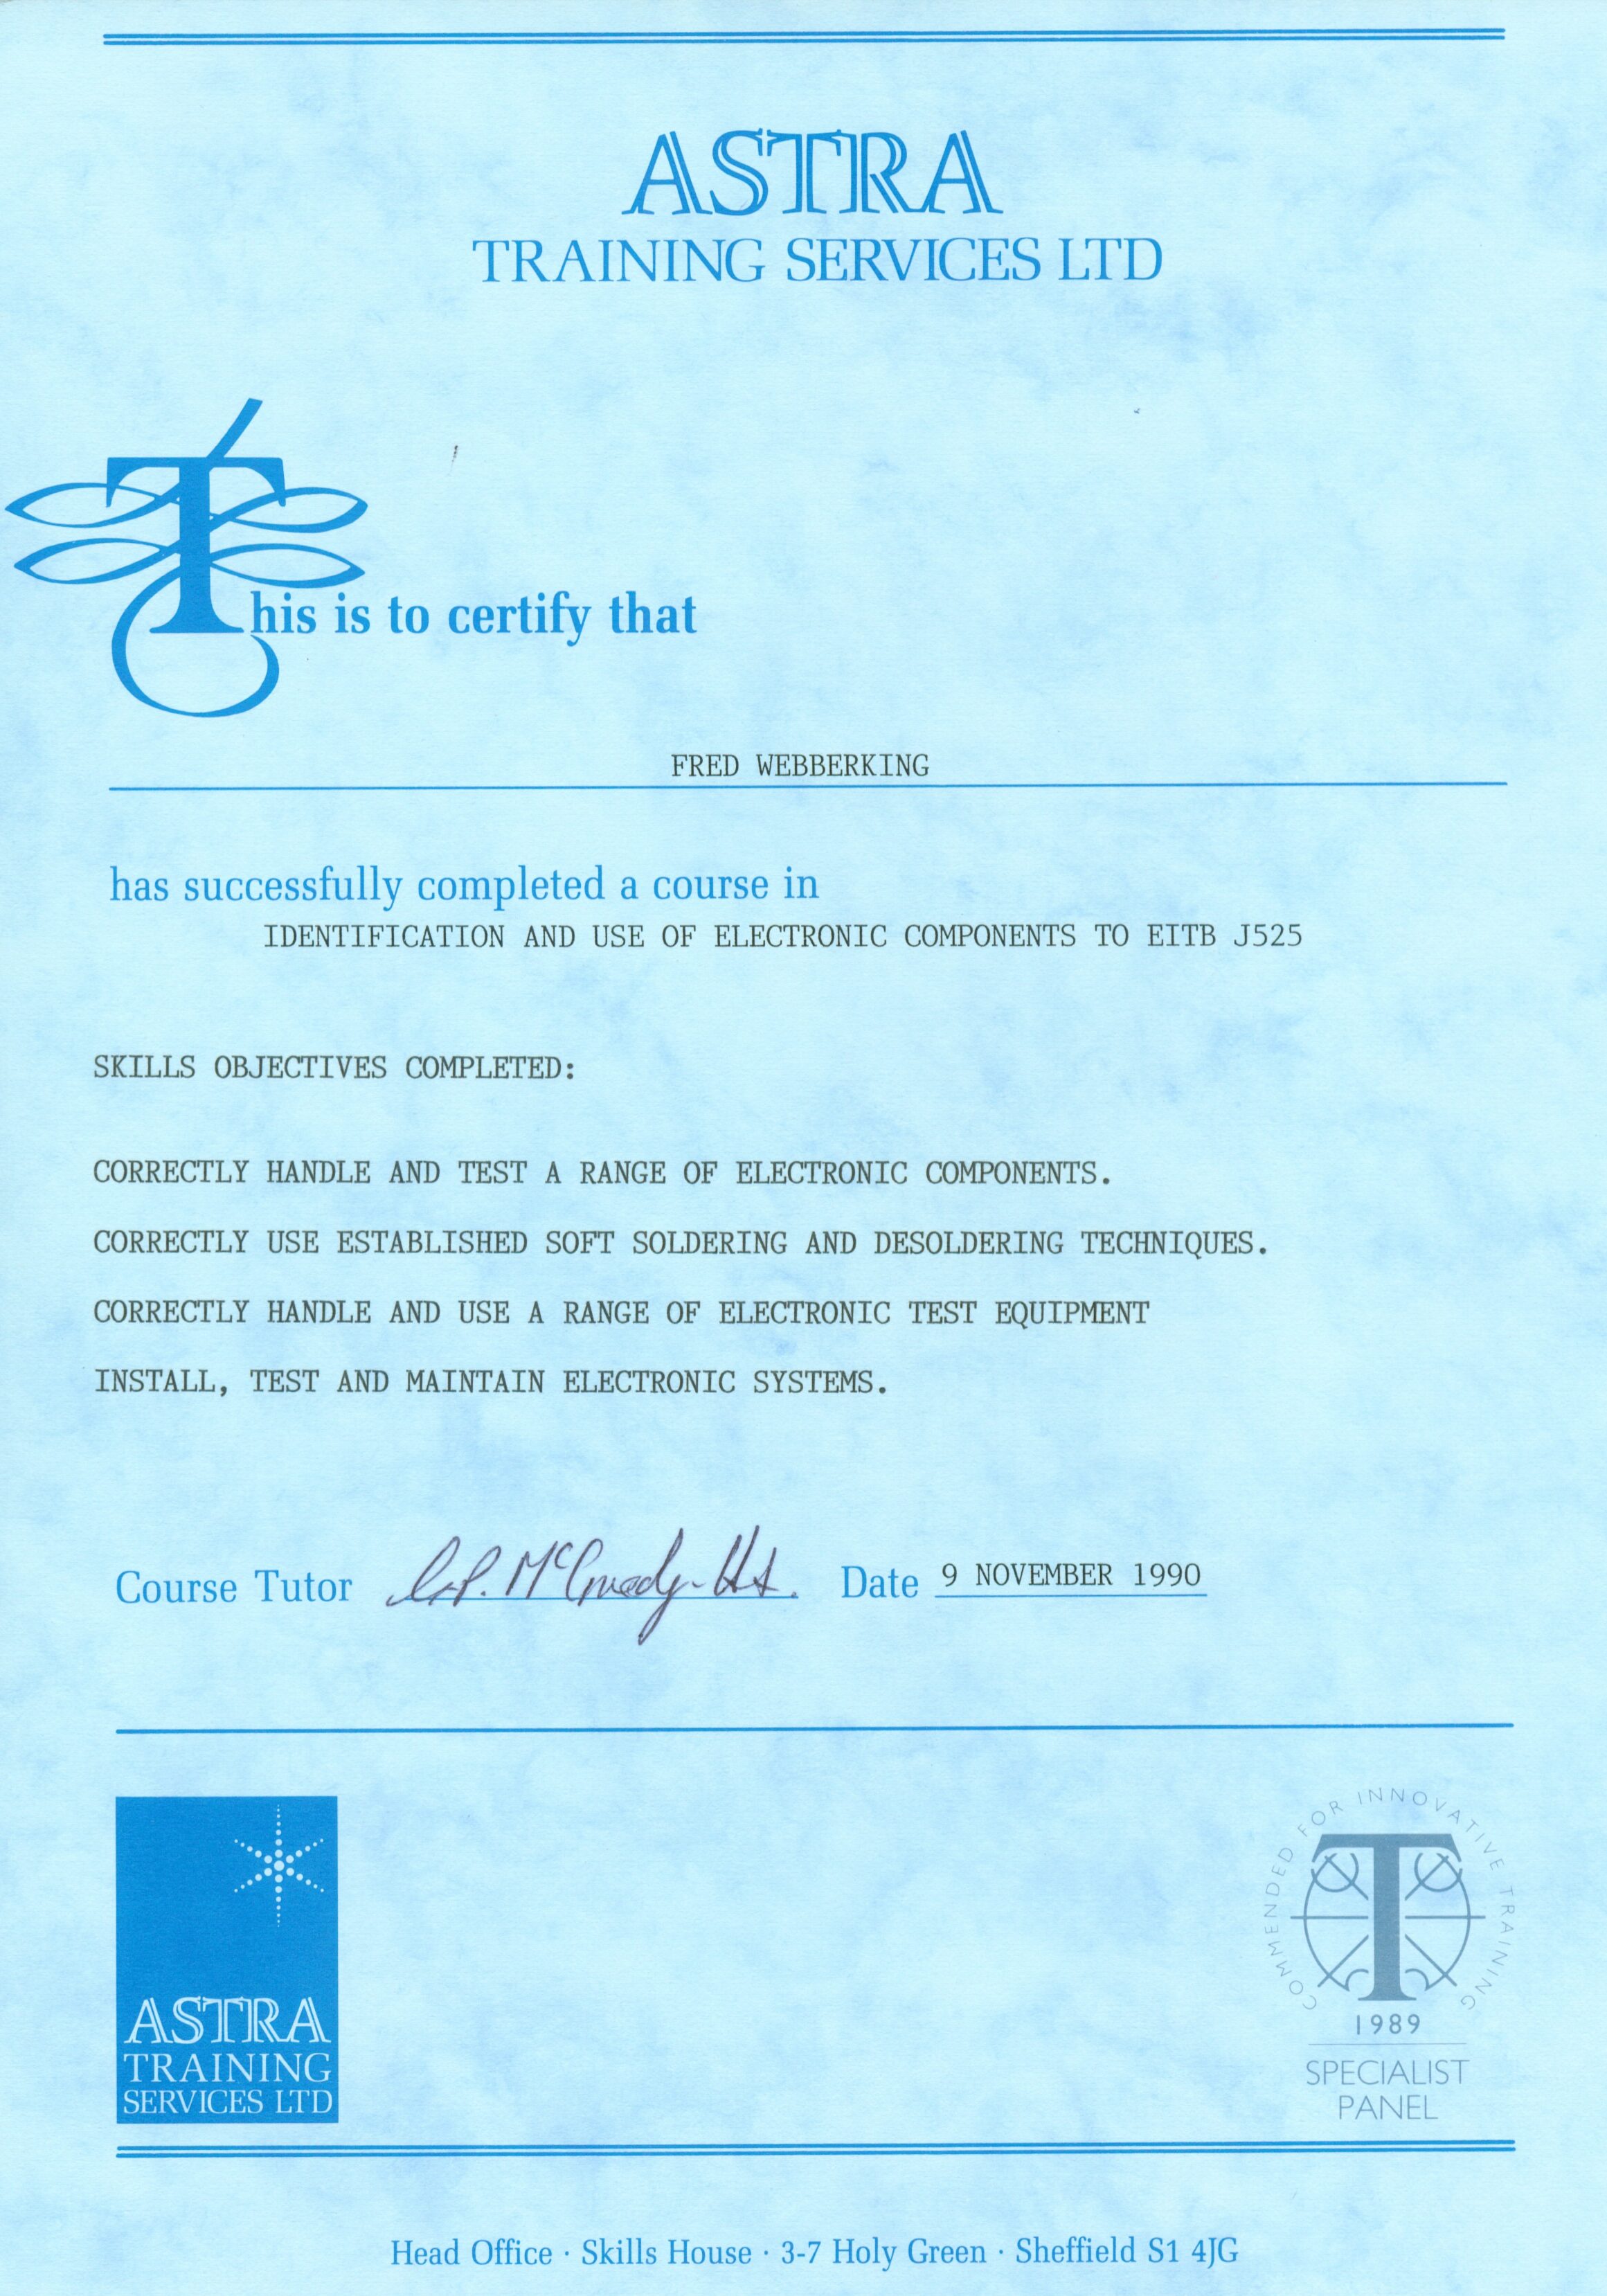 Certificate 27